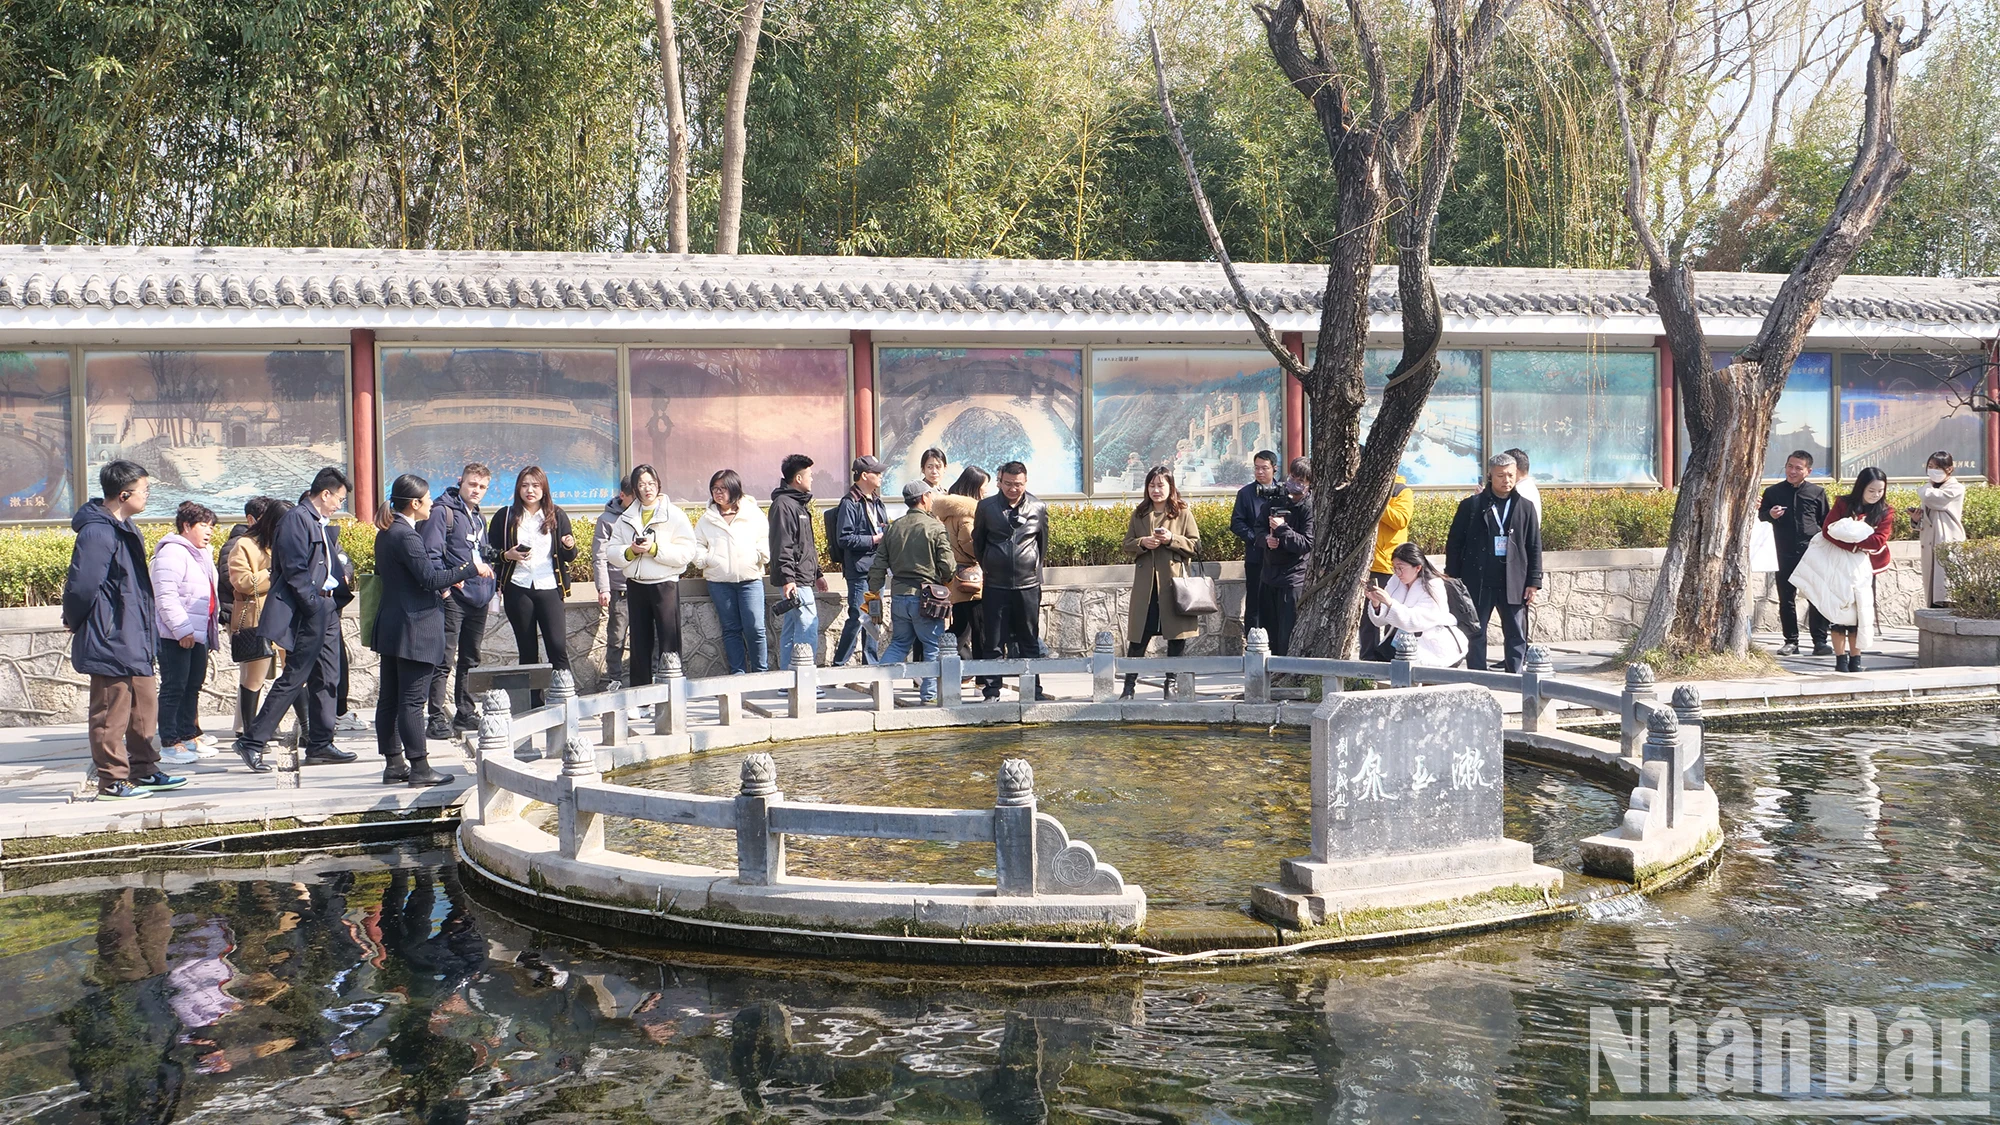 Trải nghiệm du lịch văn hóa thành cổ Minh Thủy ở Trung Quốc ảnh 4